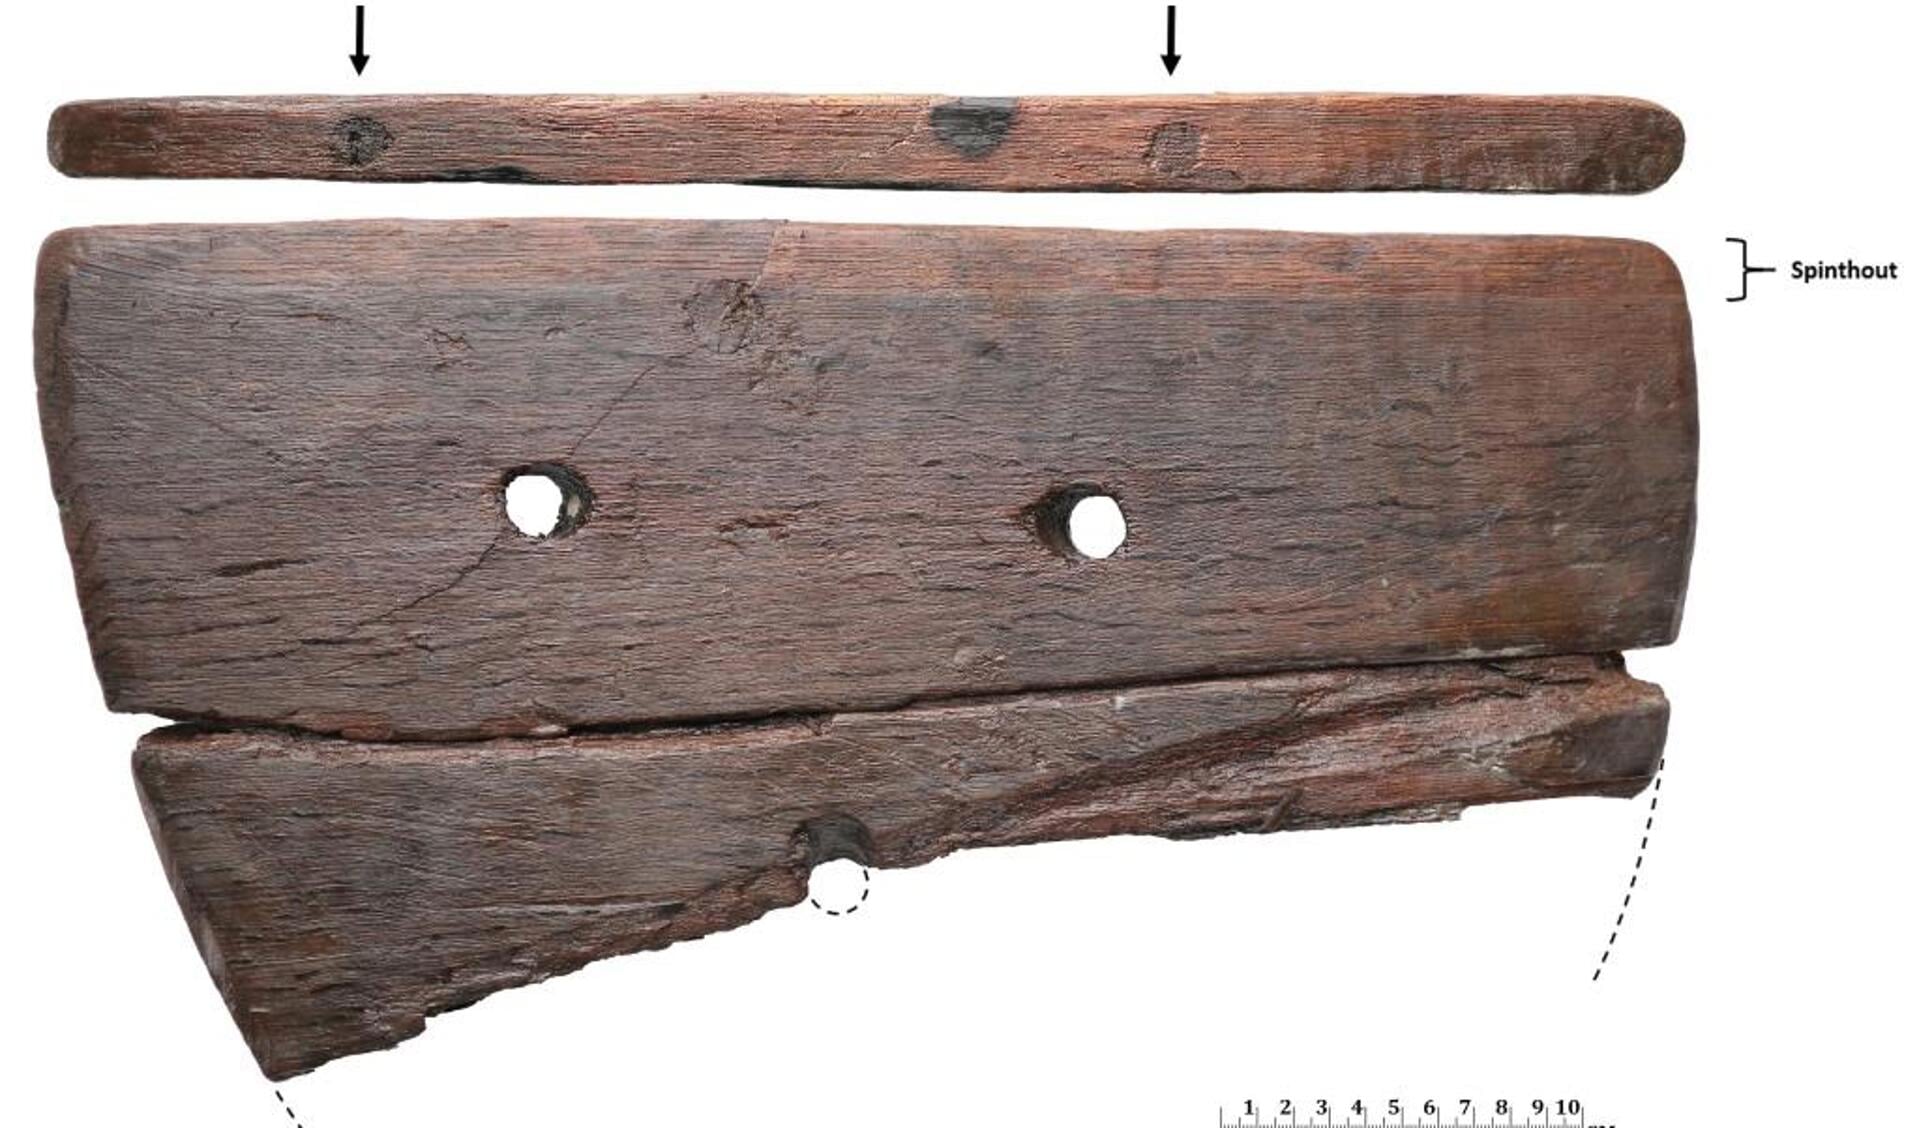 Fragmenten van een plank, gemaakt van eikenhout. Aan de spintzijde zijn twee deuvels in het hout geslagen. Afkomstig uit waterput (7de eeuw na Christus) 